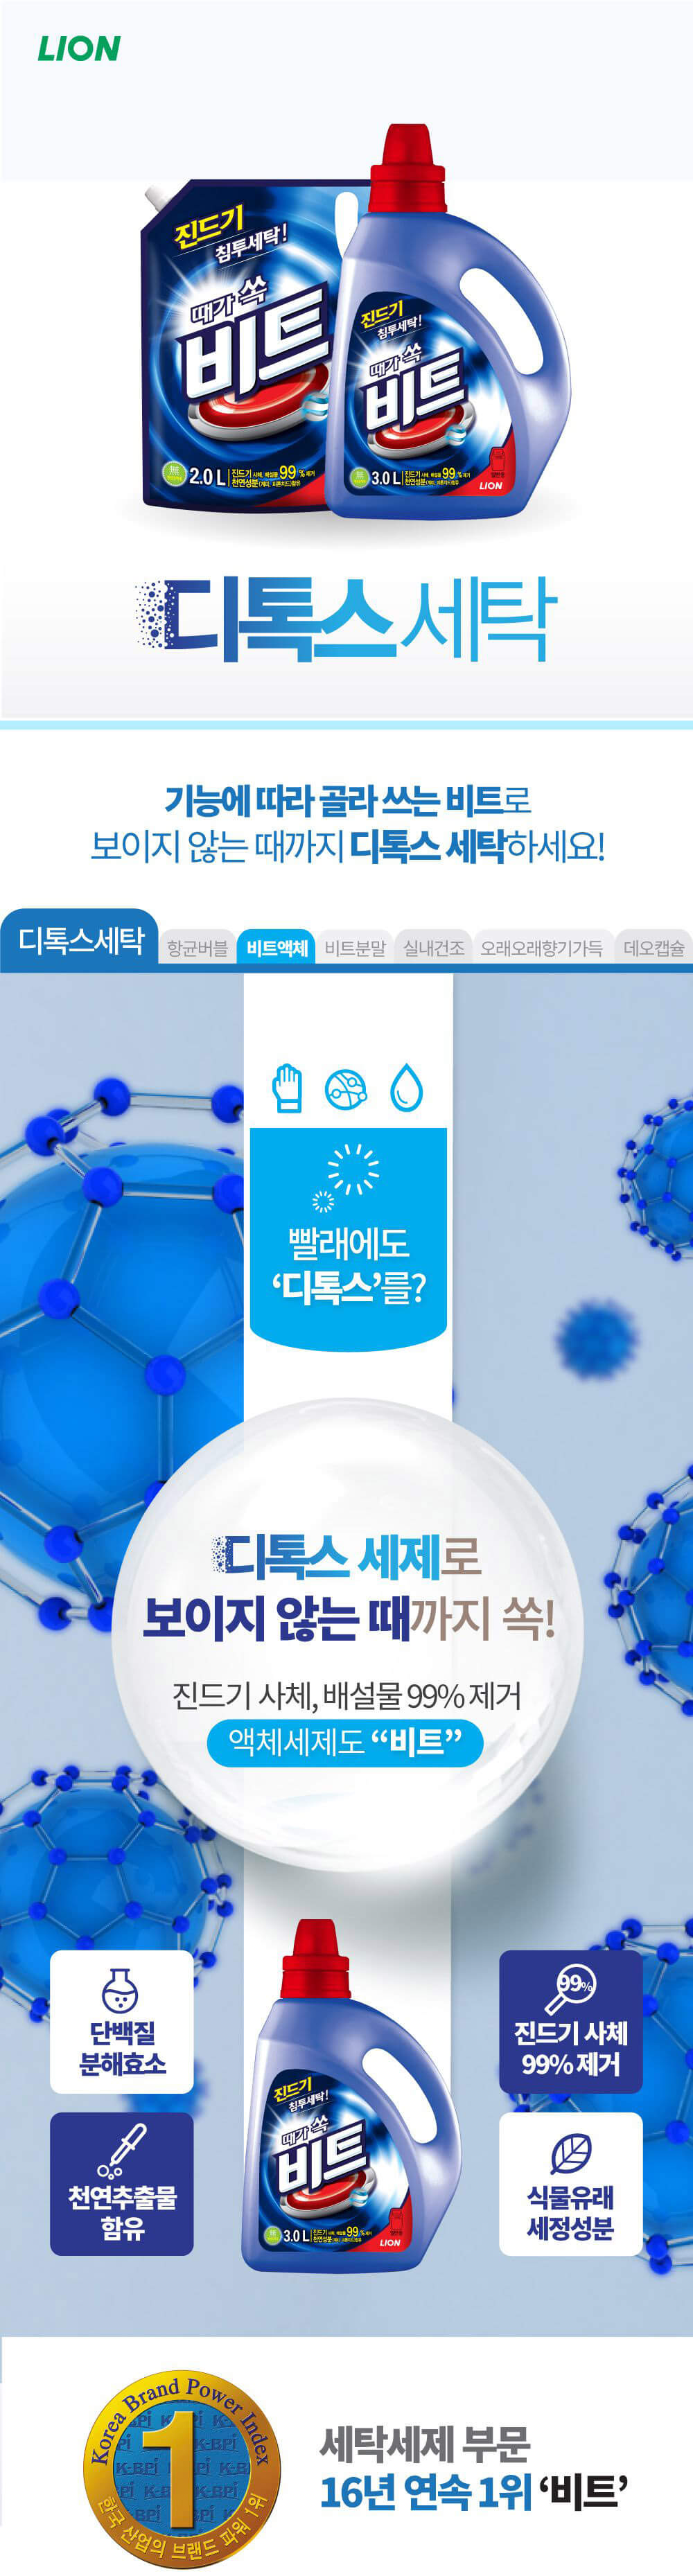 韓國食品-[LGCare] Anti-dust mite Liquid Laundry Detergent[Standard] 2.4L